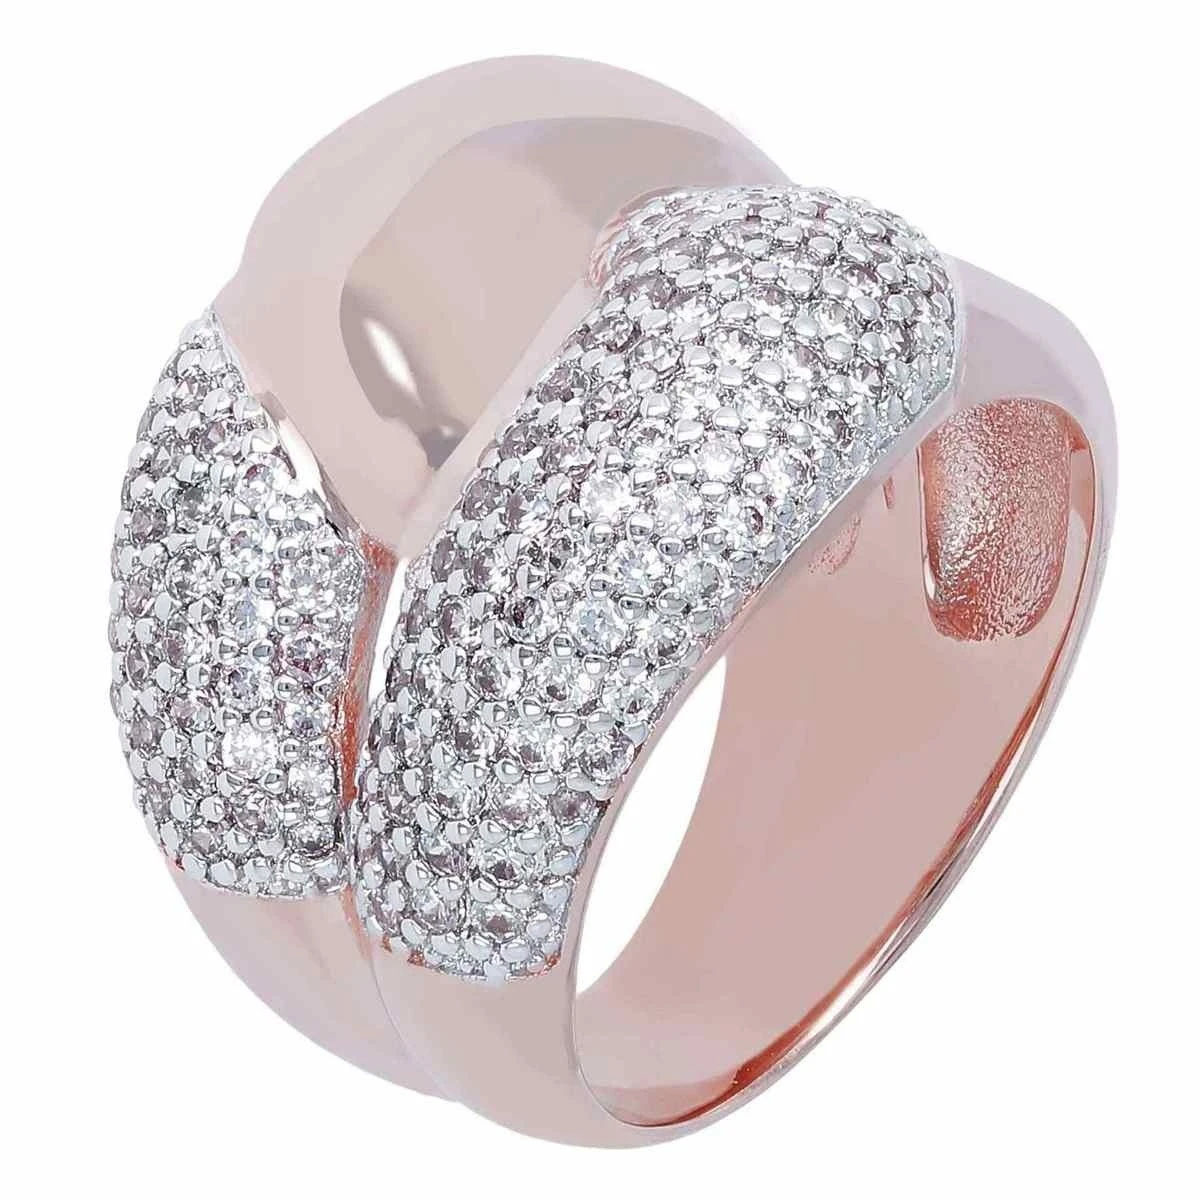 Venta al por mayor de joyería OEM/ODM, anillo personalizado de Alemania, anillo CZ chapado en oro rosa en diseño de plata 925, proveedores mayoristas de joyería fina personalizada